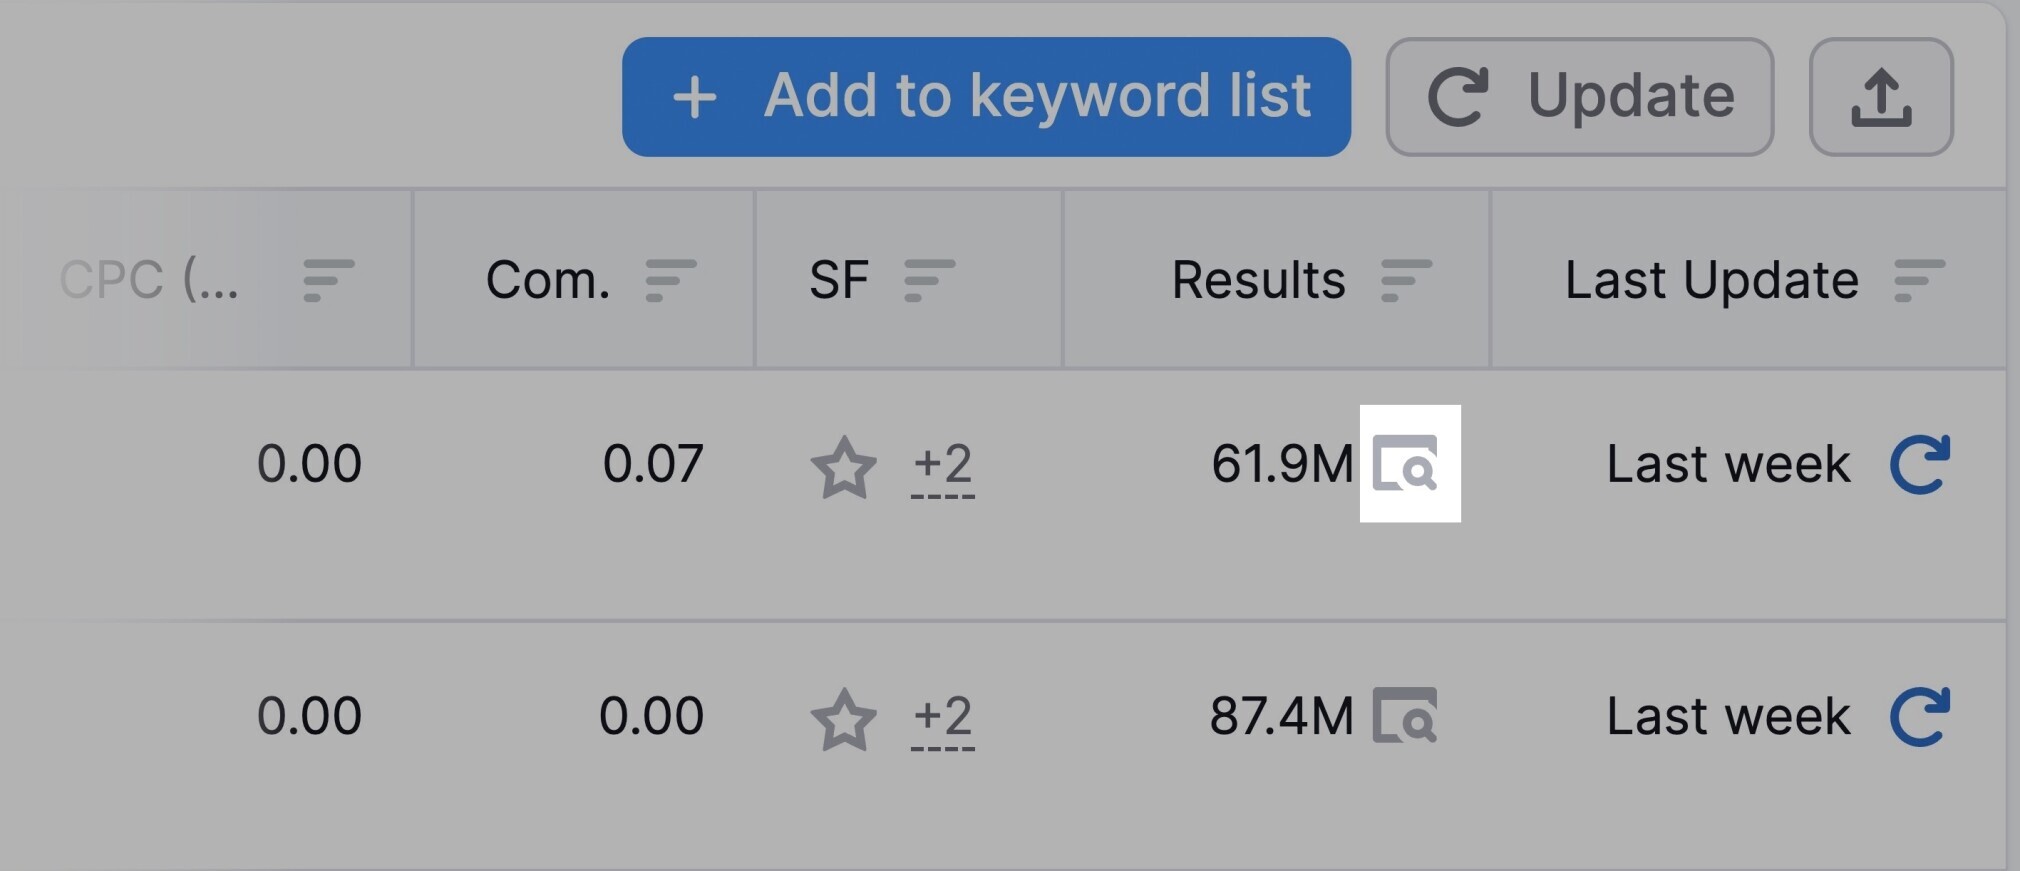 keyword results icon